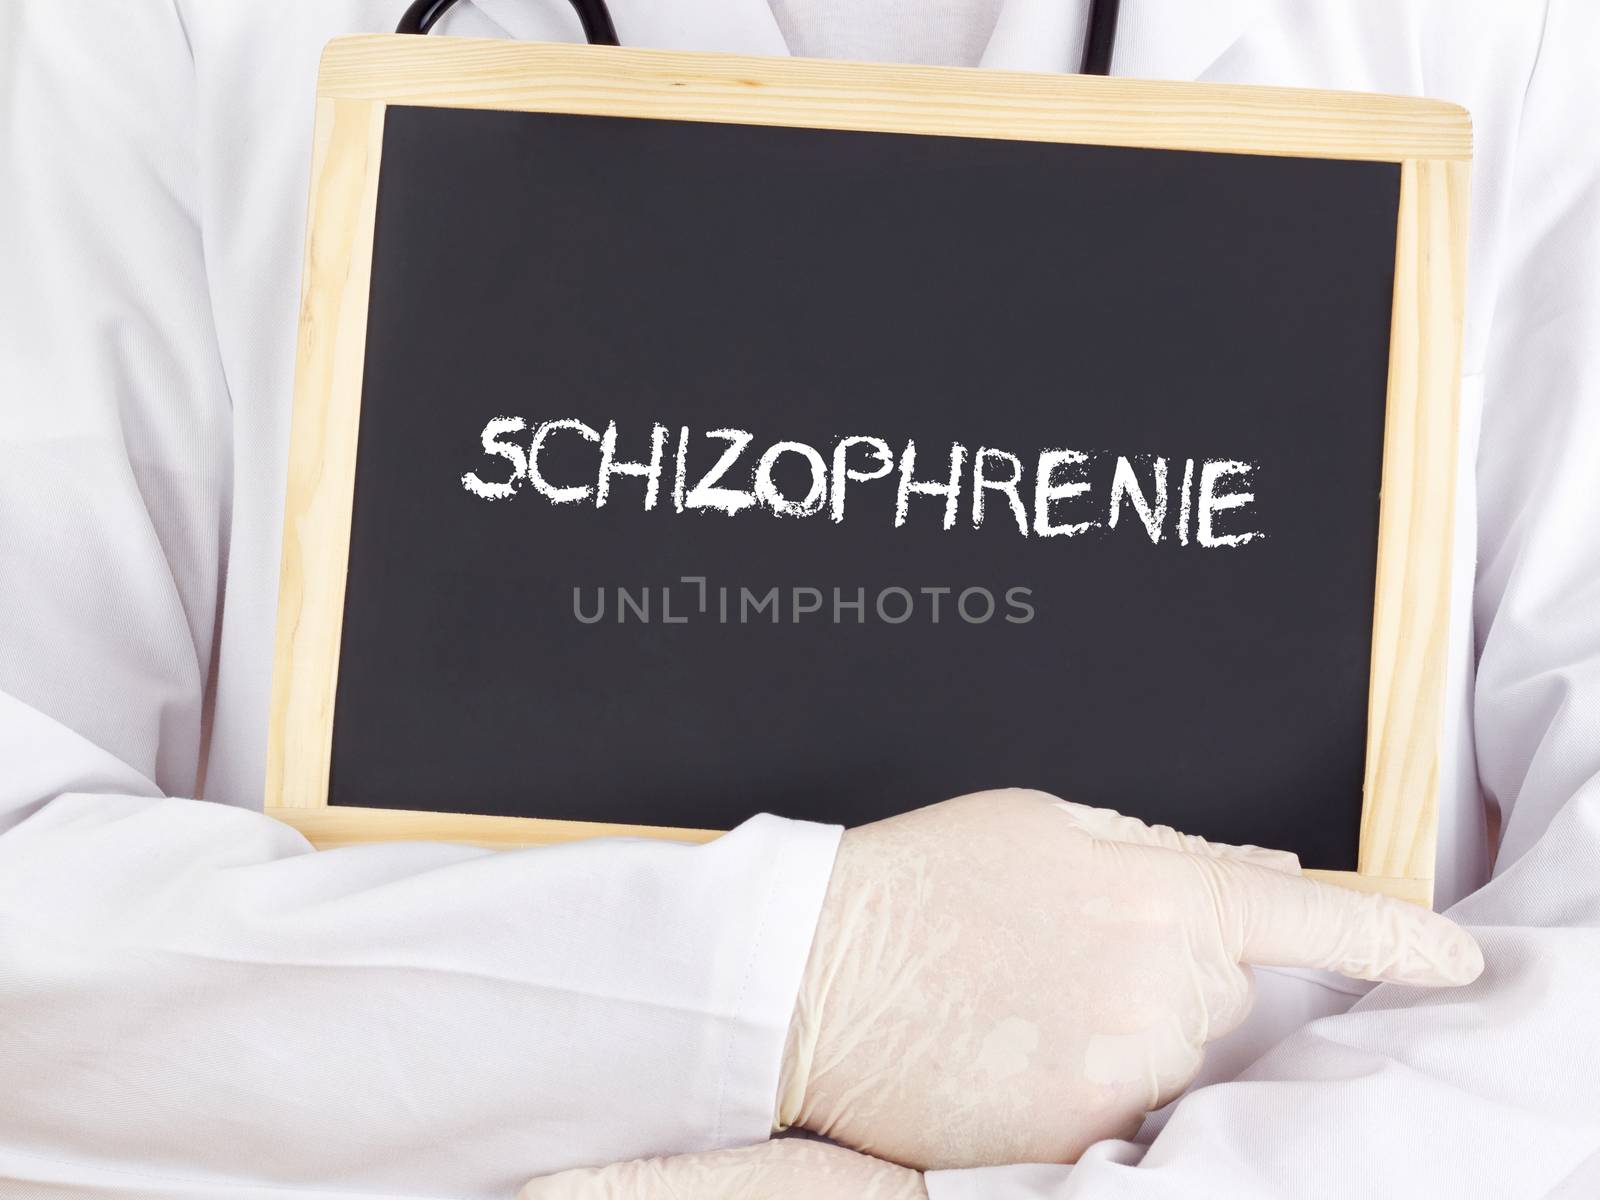 Doctor shows information: Schizophrenia in german language